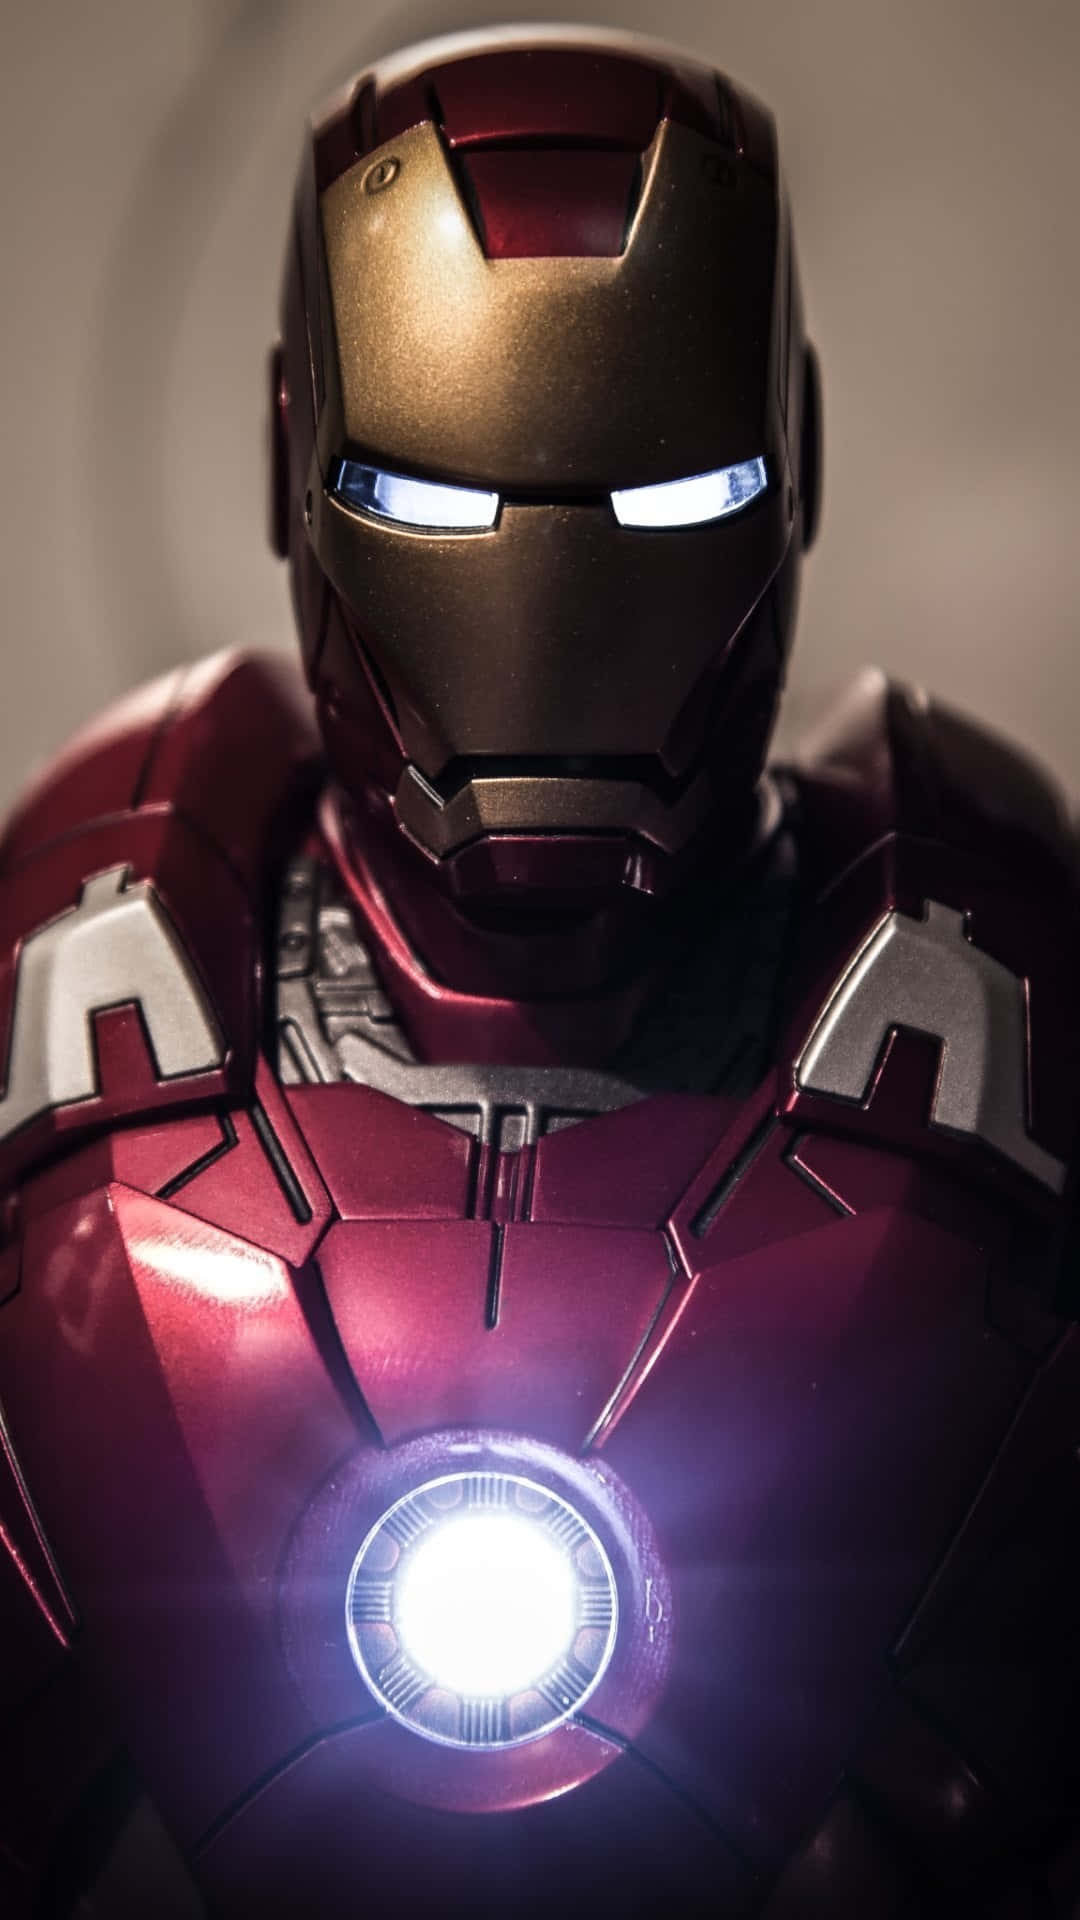 Visaupp Din Kärlek För Iron Man Med Denna Fantastiska Coola Iron Man Iphone-bakgrundsbild. Wallpaper